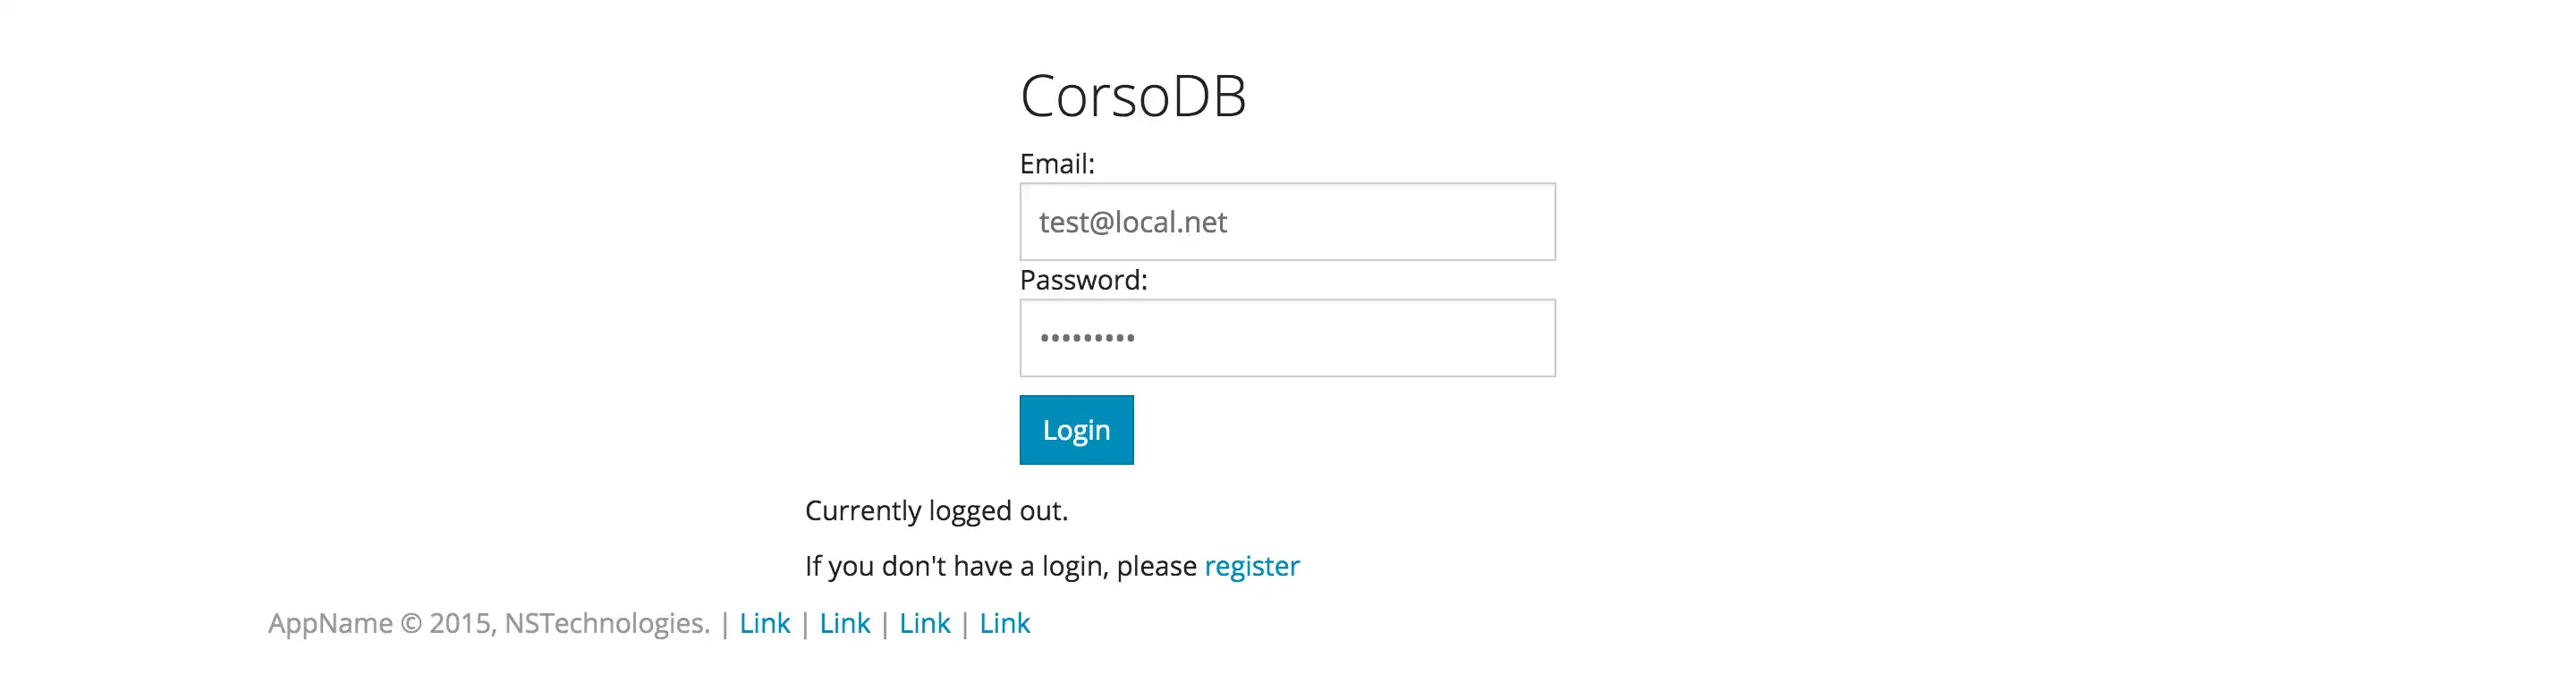 הורד את כלי האינטרנט או אפליקציית האינטרנט CorsoDB Web Application Framework